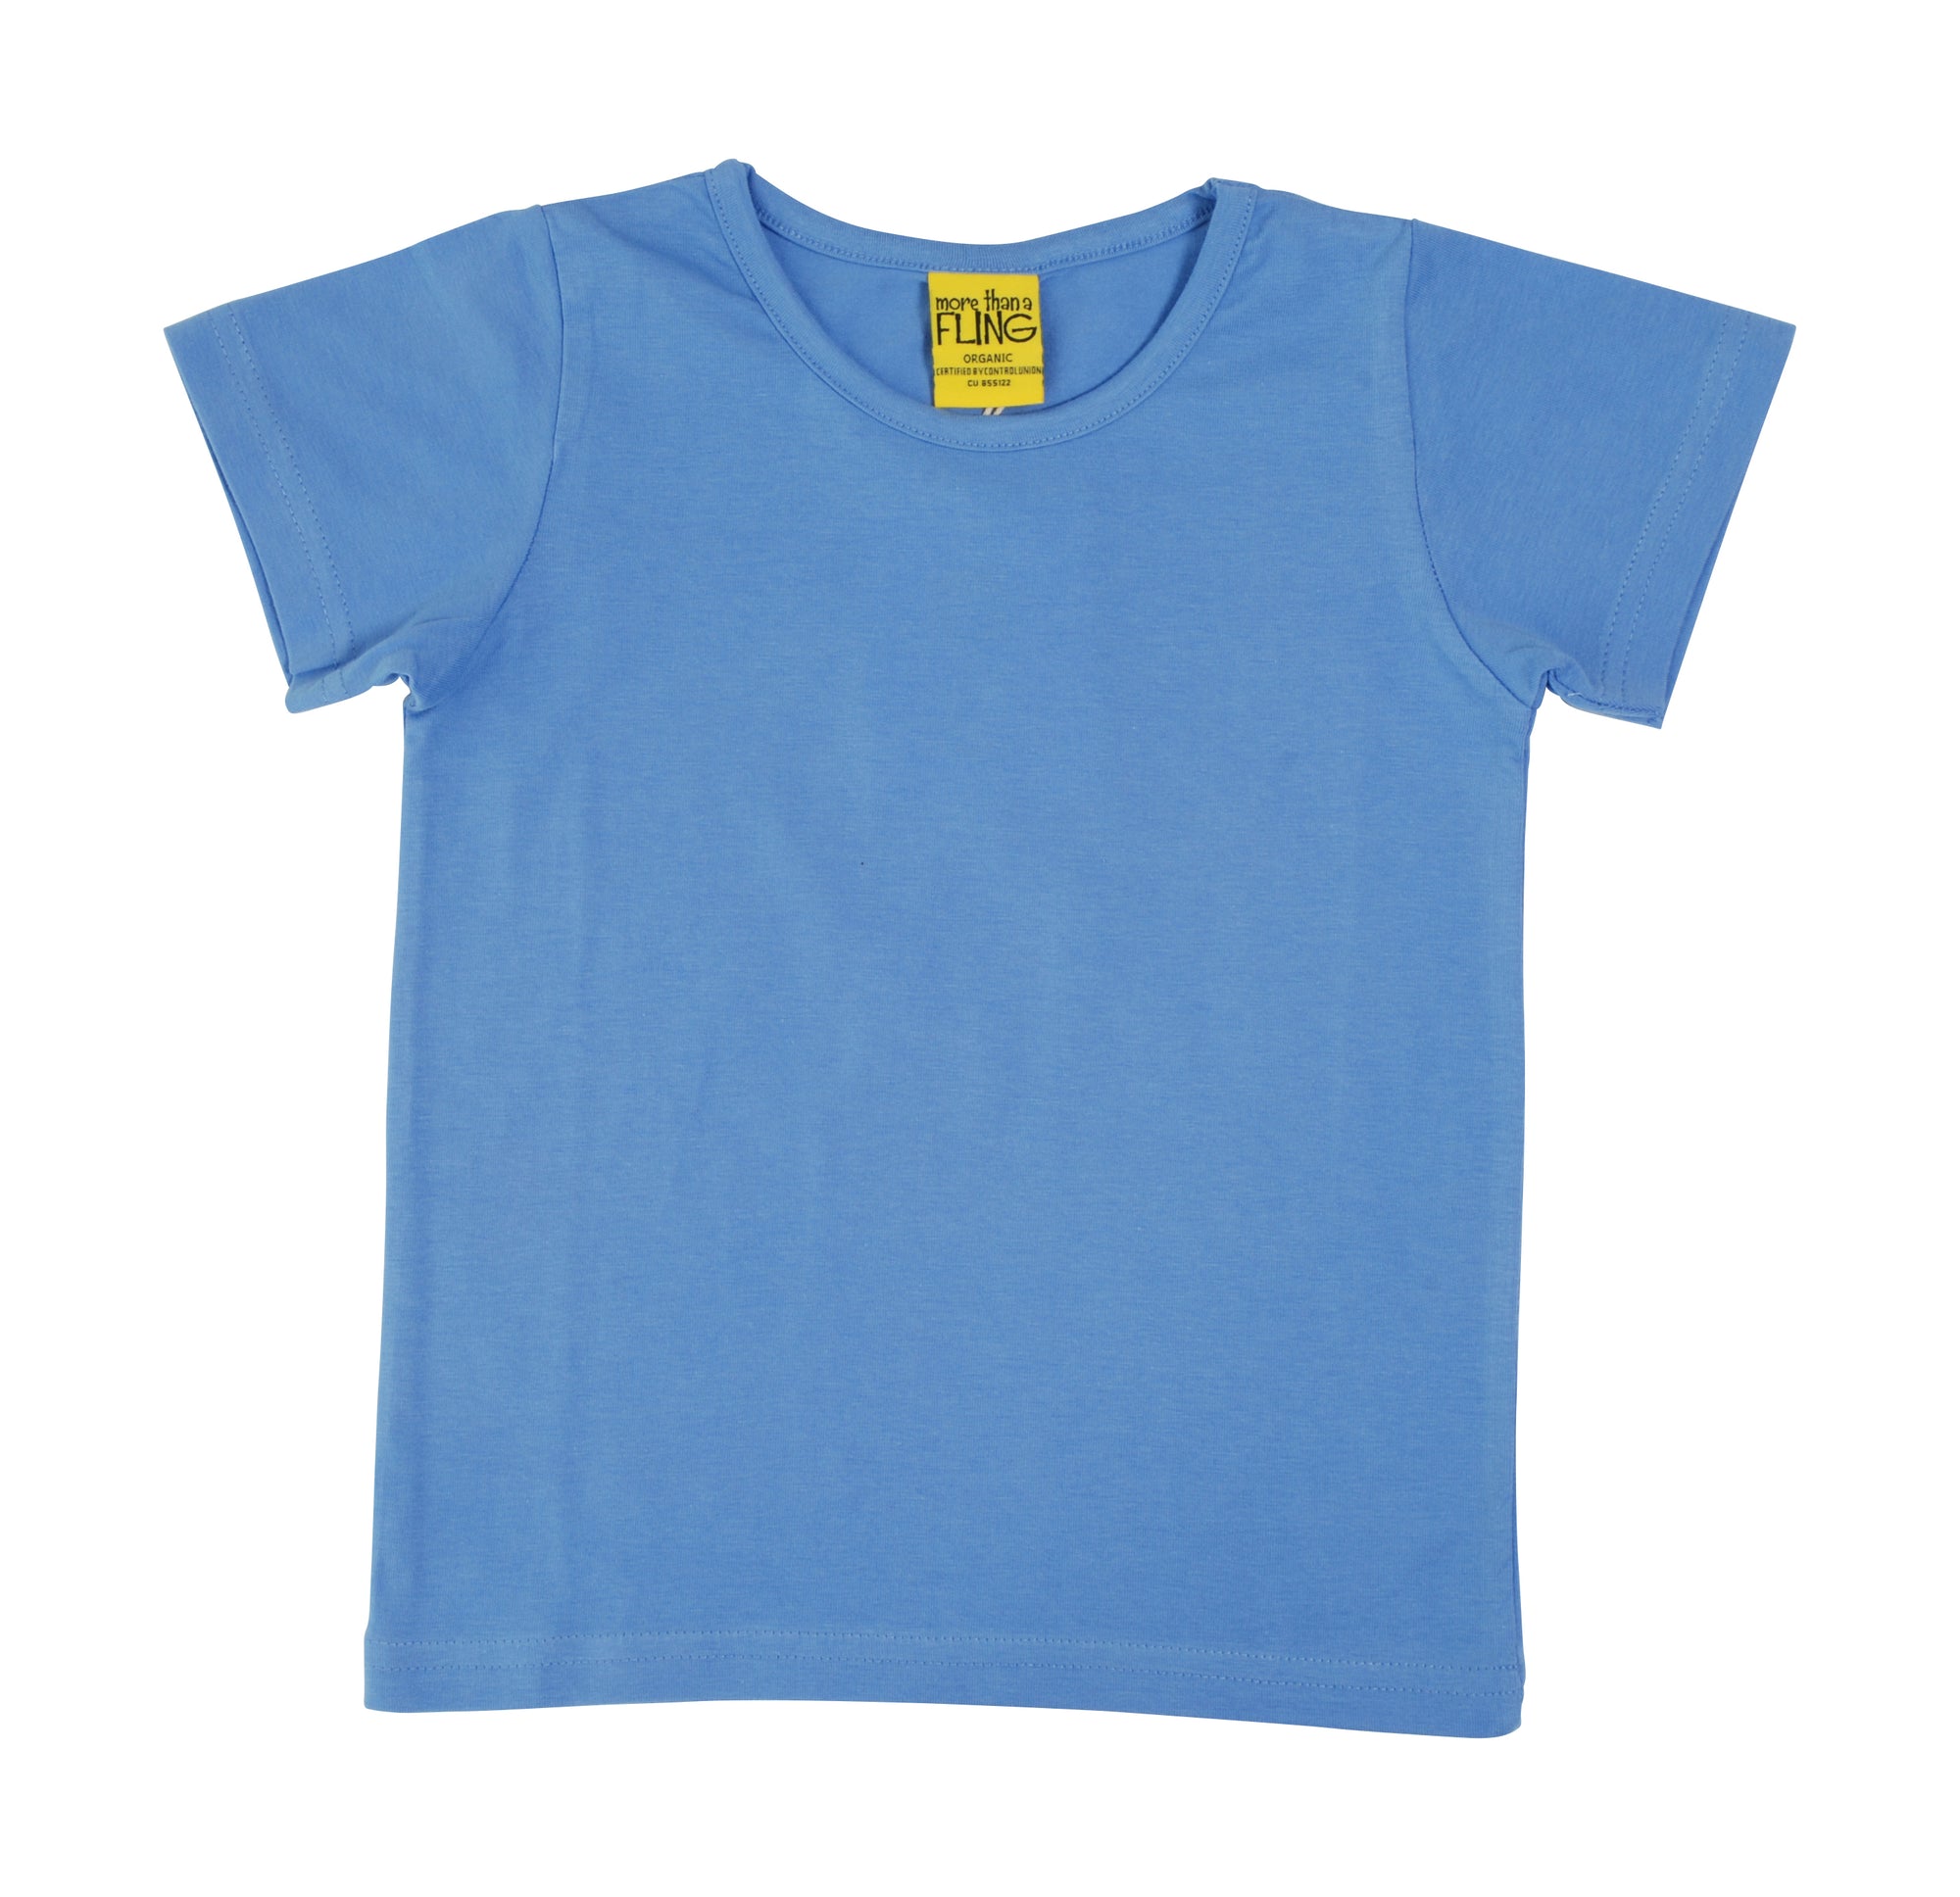 More Than A Fling T-Shirt Corn Flower Blue - Korenbloem Blauw T-shirt